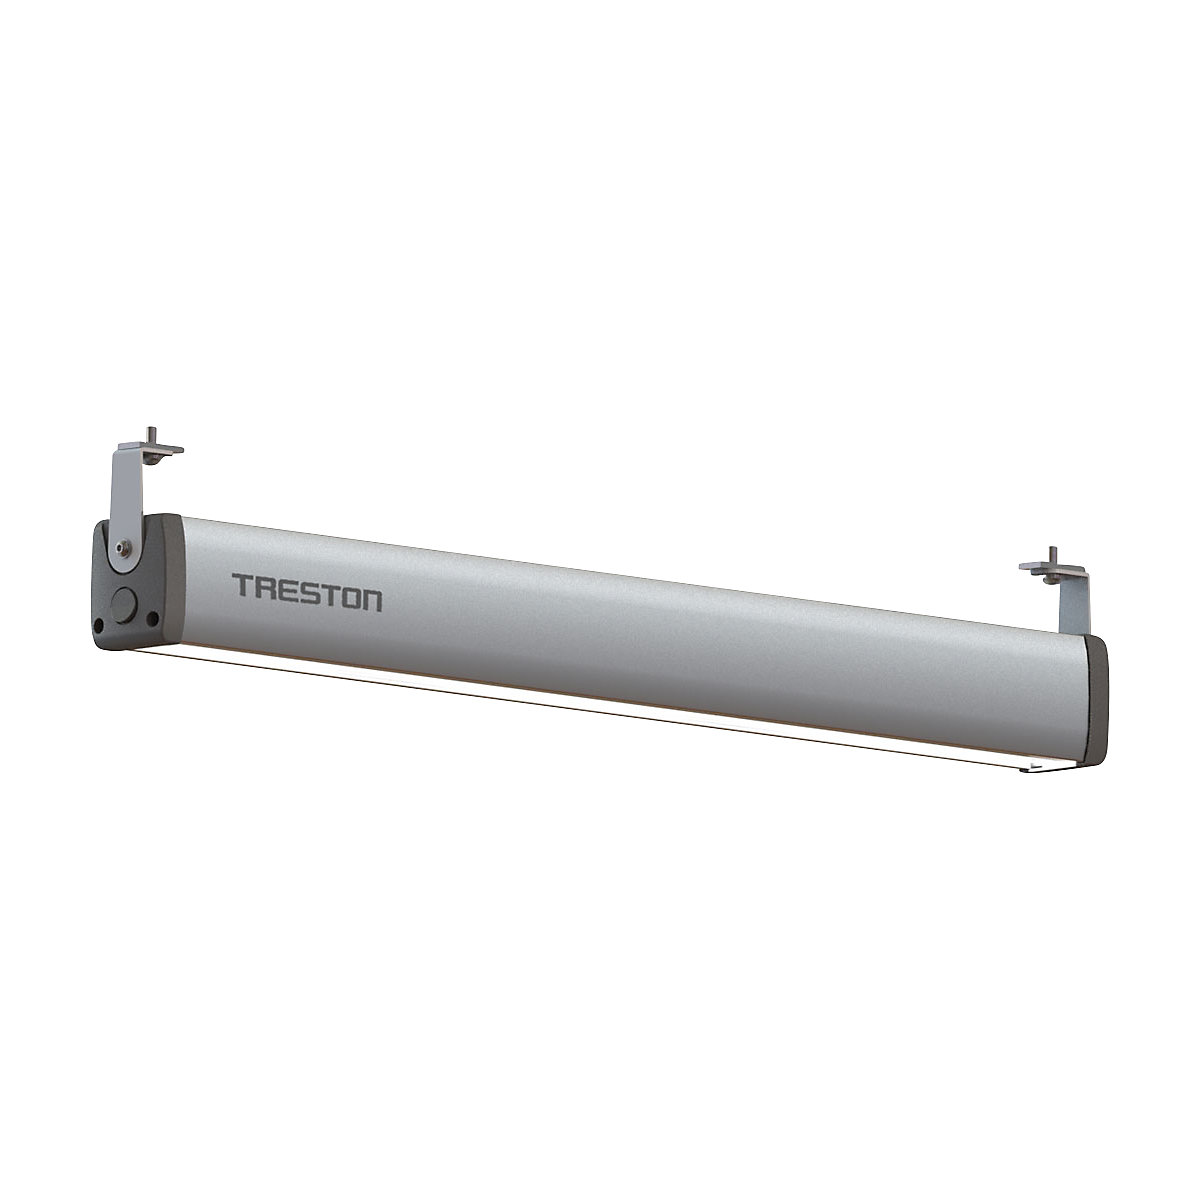 IntoLite LED-es munkahelyi lámpa - Treston